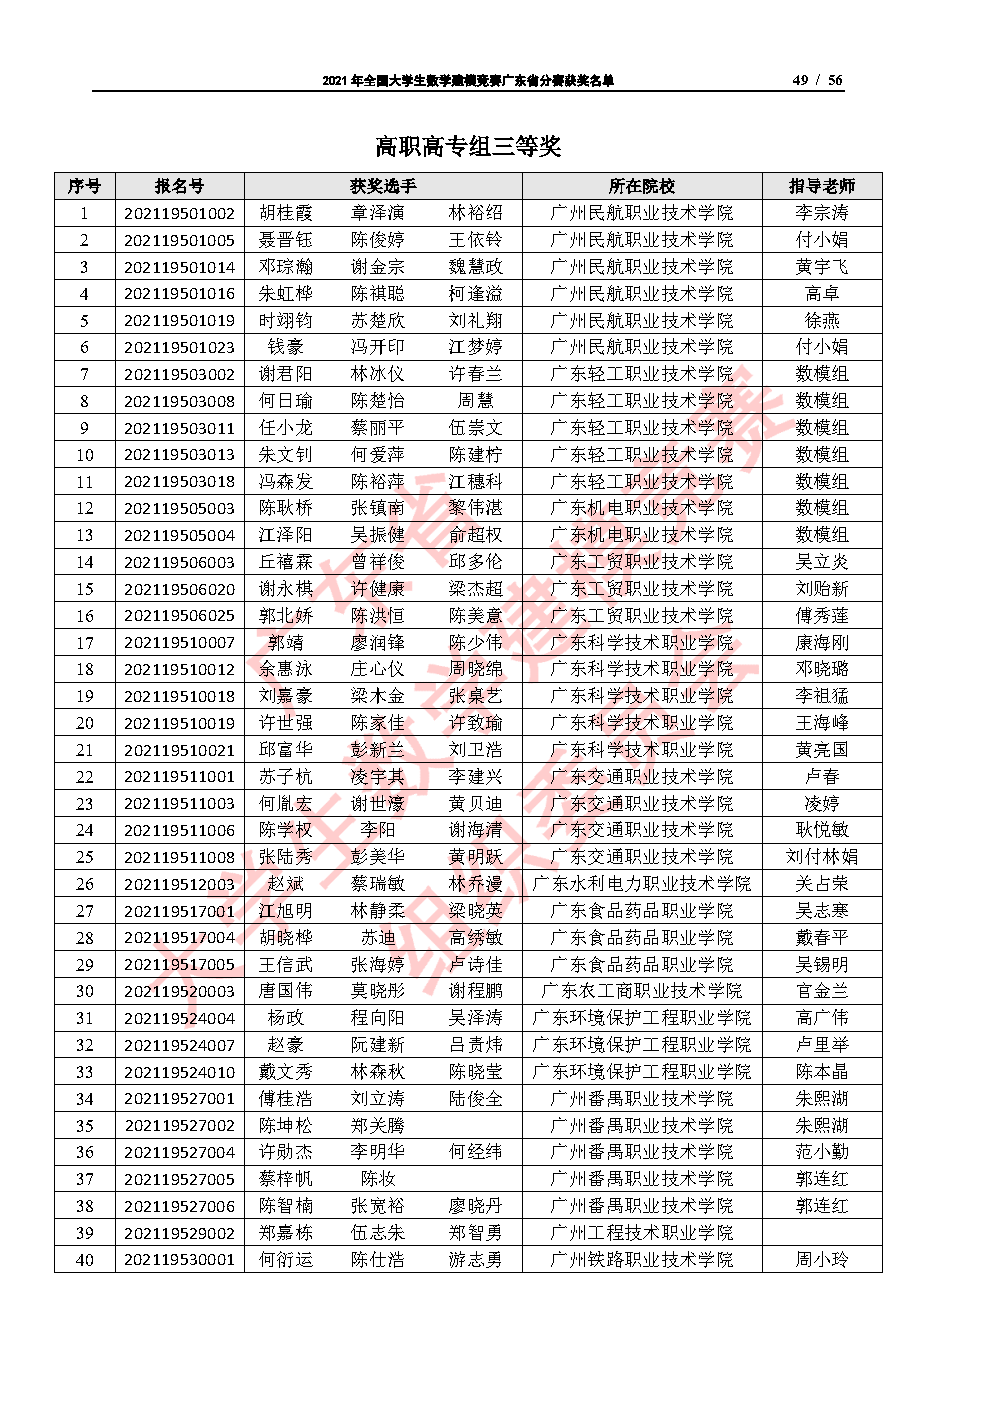 2021年全国大学生数学建模竞赛广东省分赛获奖名单_Page49.png